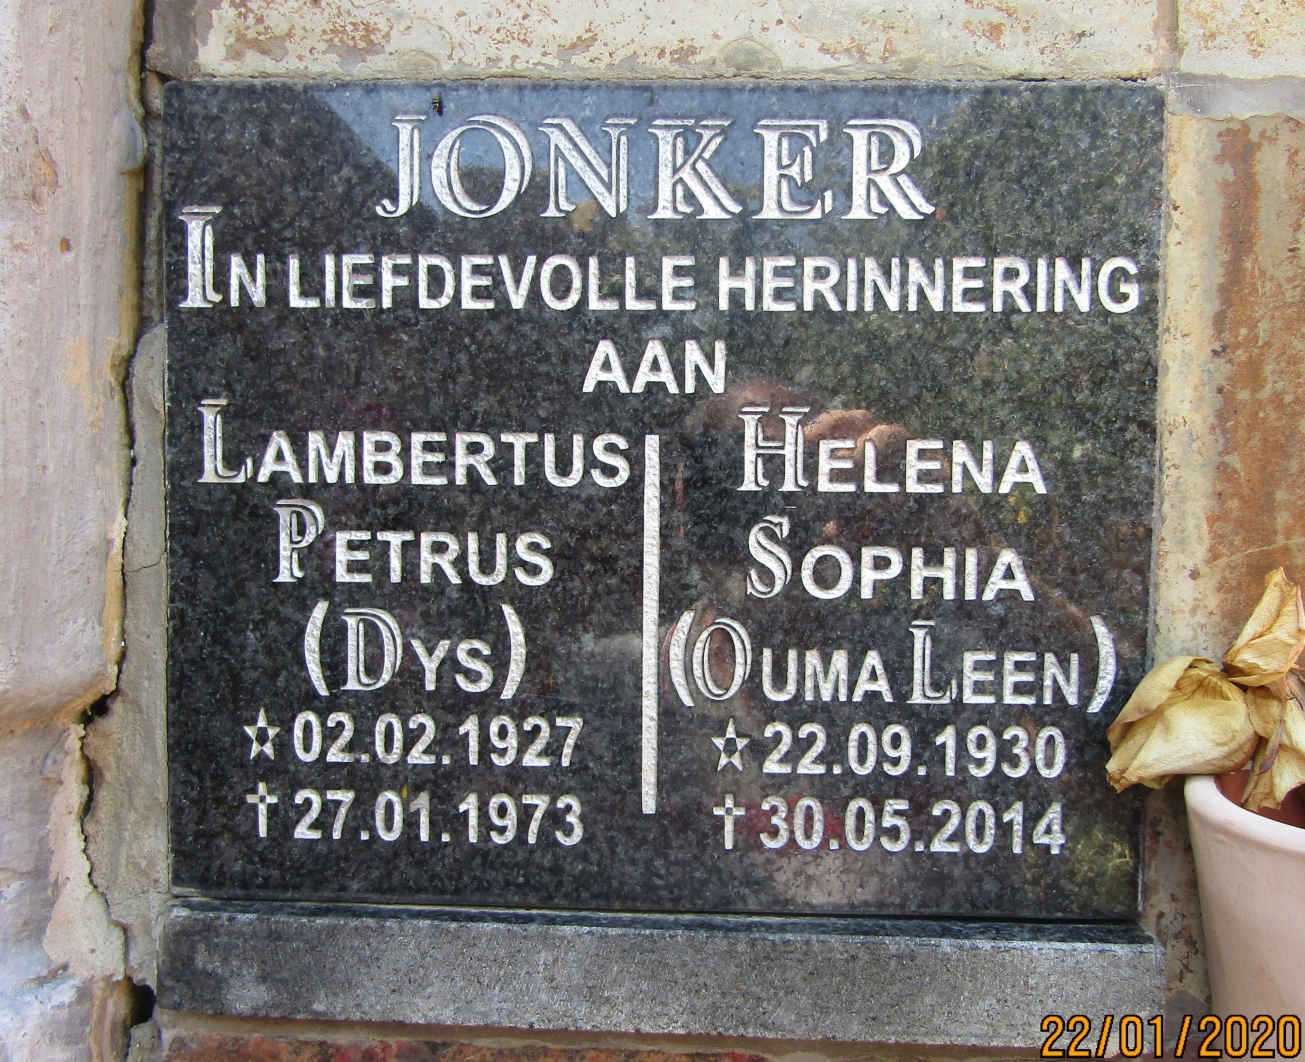 JONKER Lambertus Petrus 1927-1973 & Helena Sophia 1930-2014